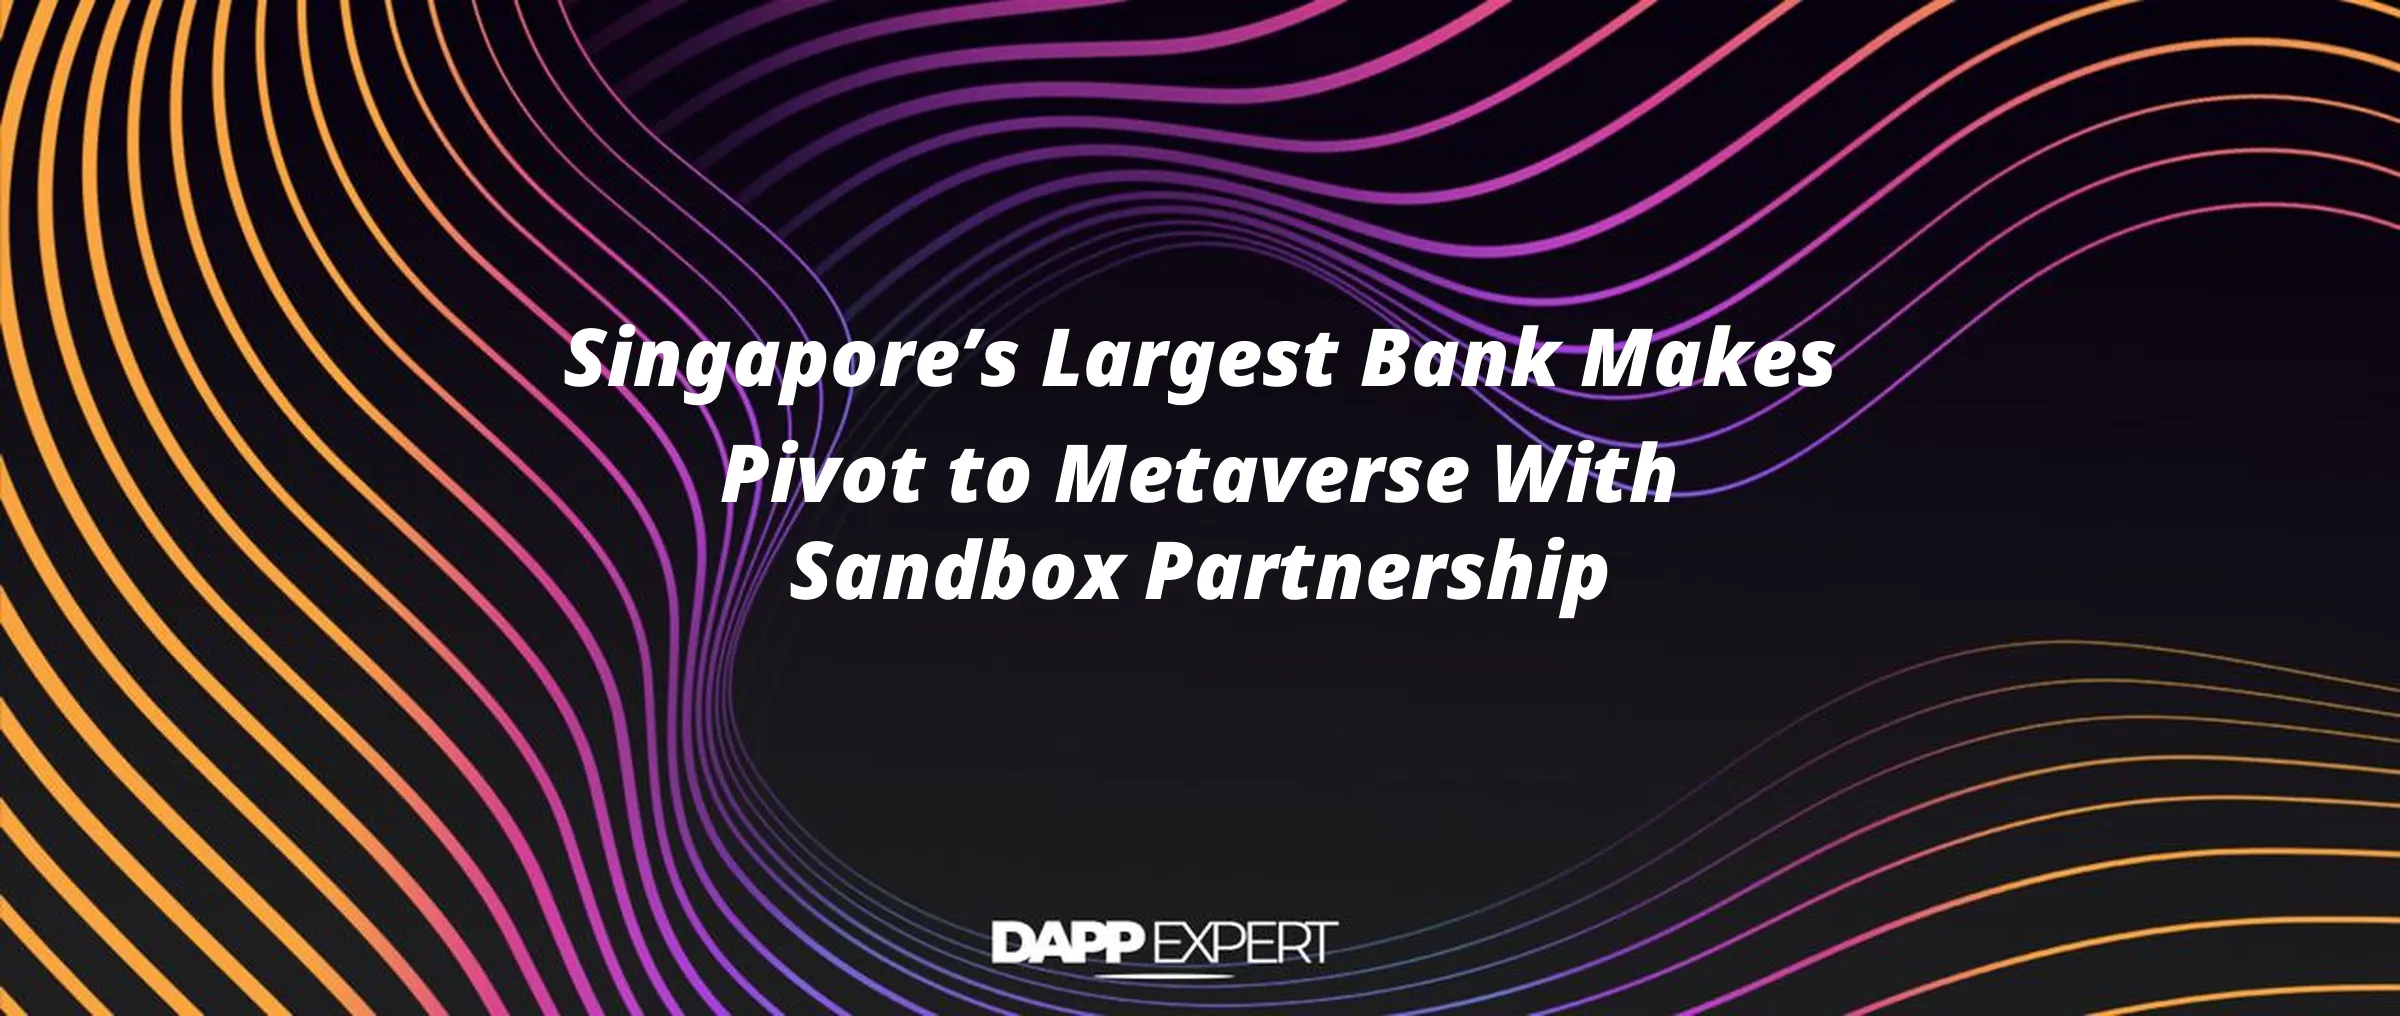 Singapore’s Largest Bank Makes Pivot to Metaverse With Sandbox Partnership